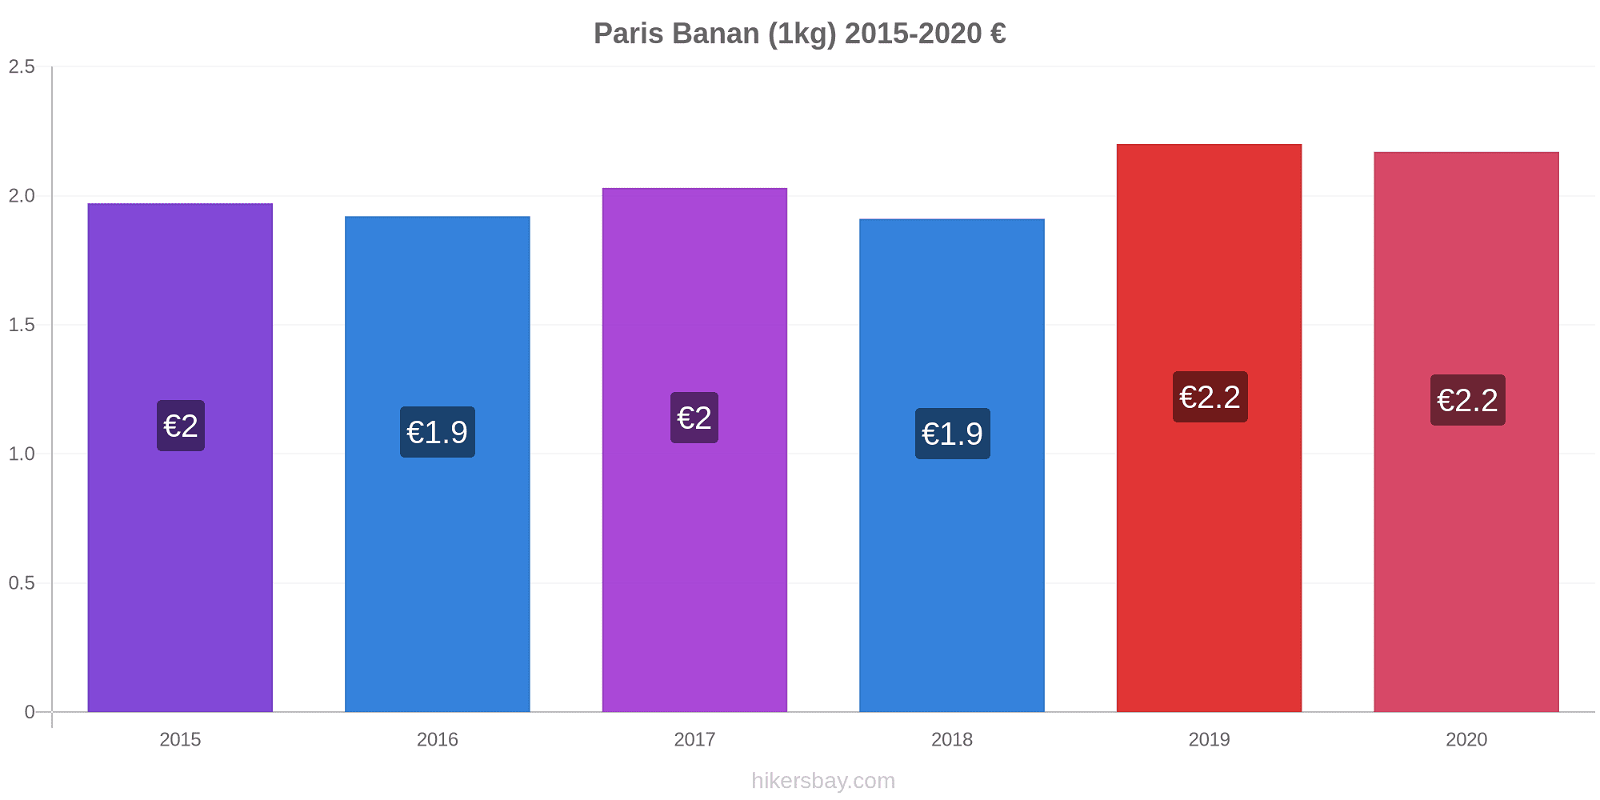 Paris prisendringer Banan (1kg) hikersbay.com